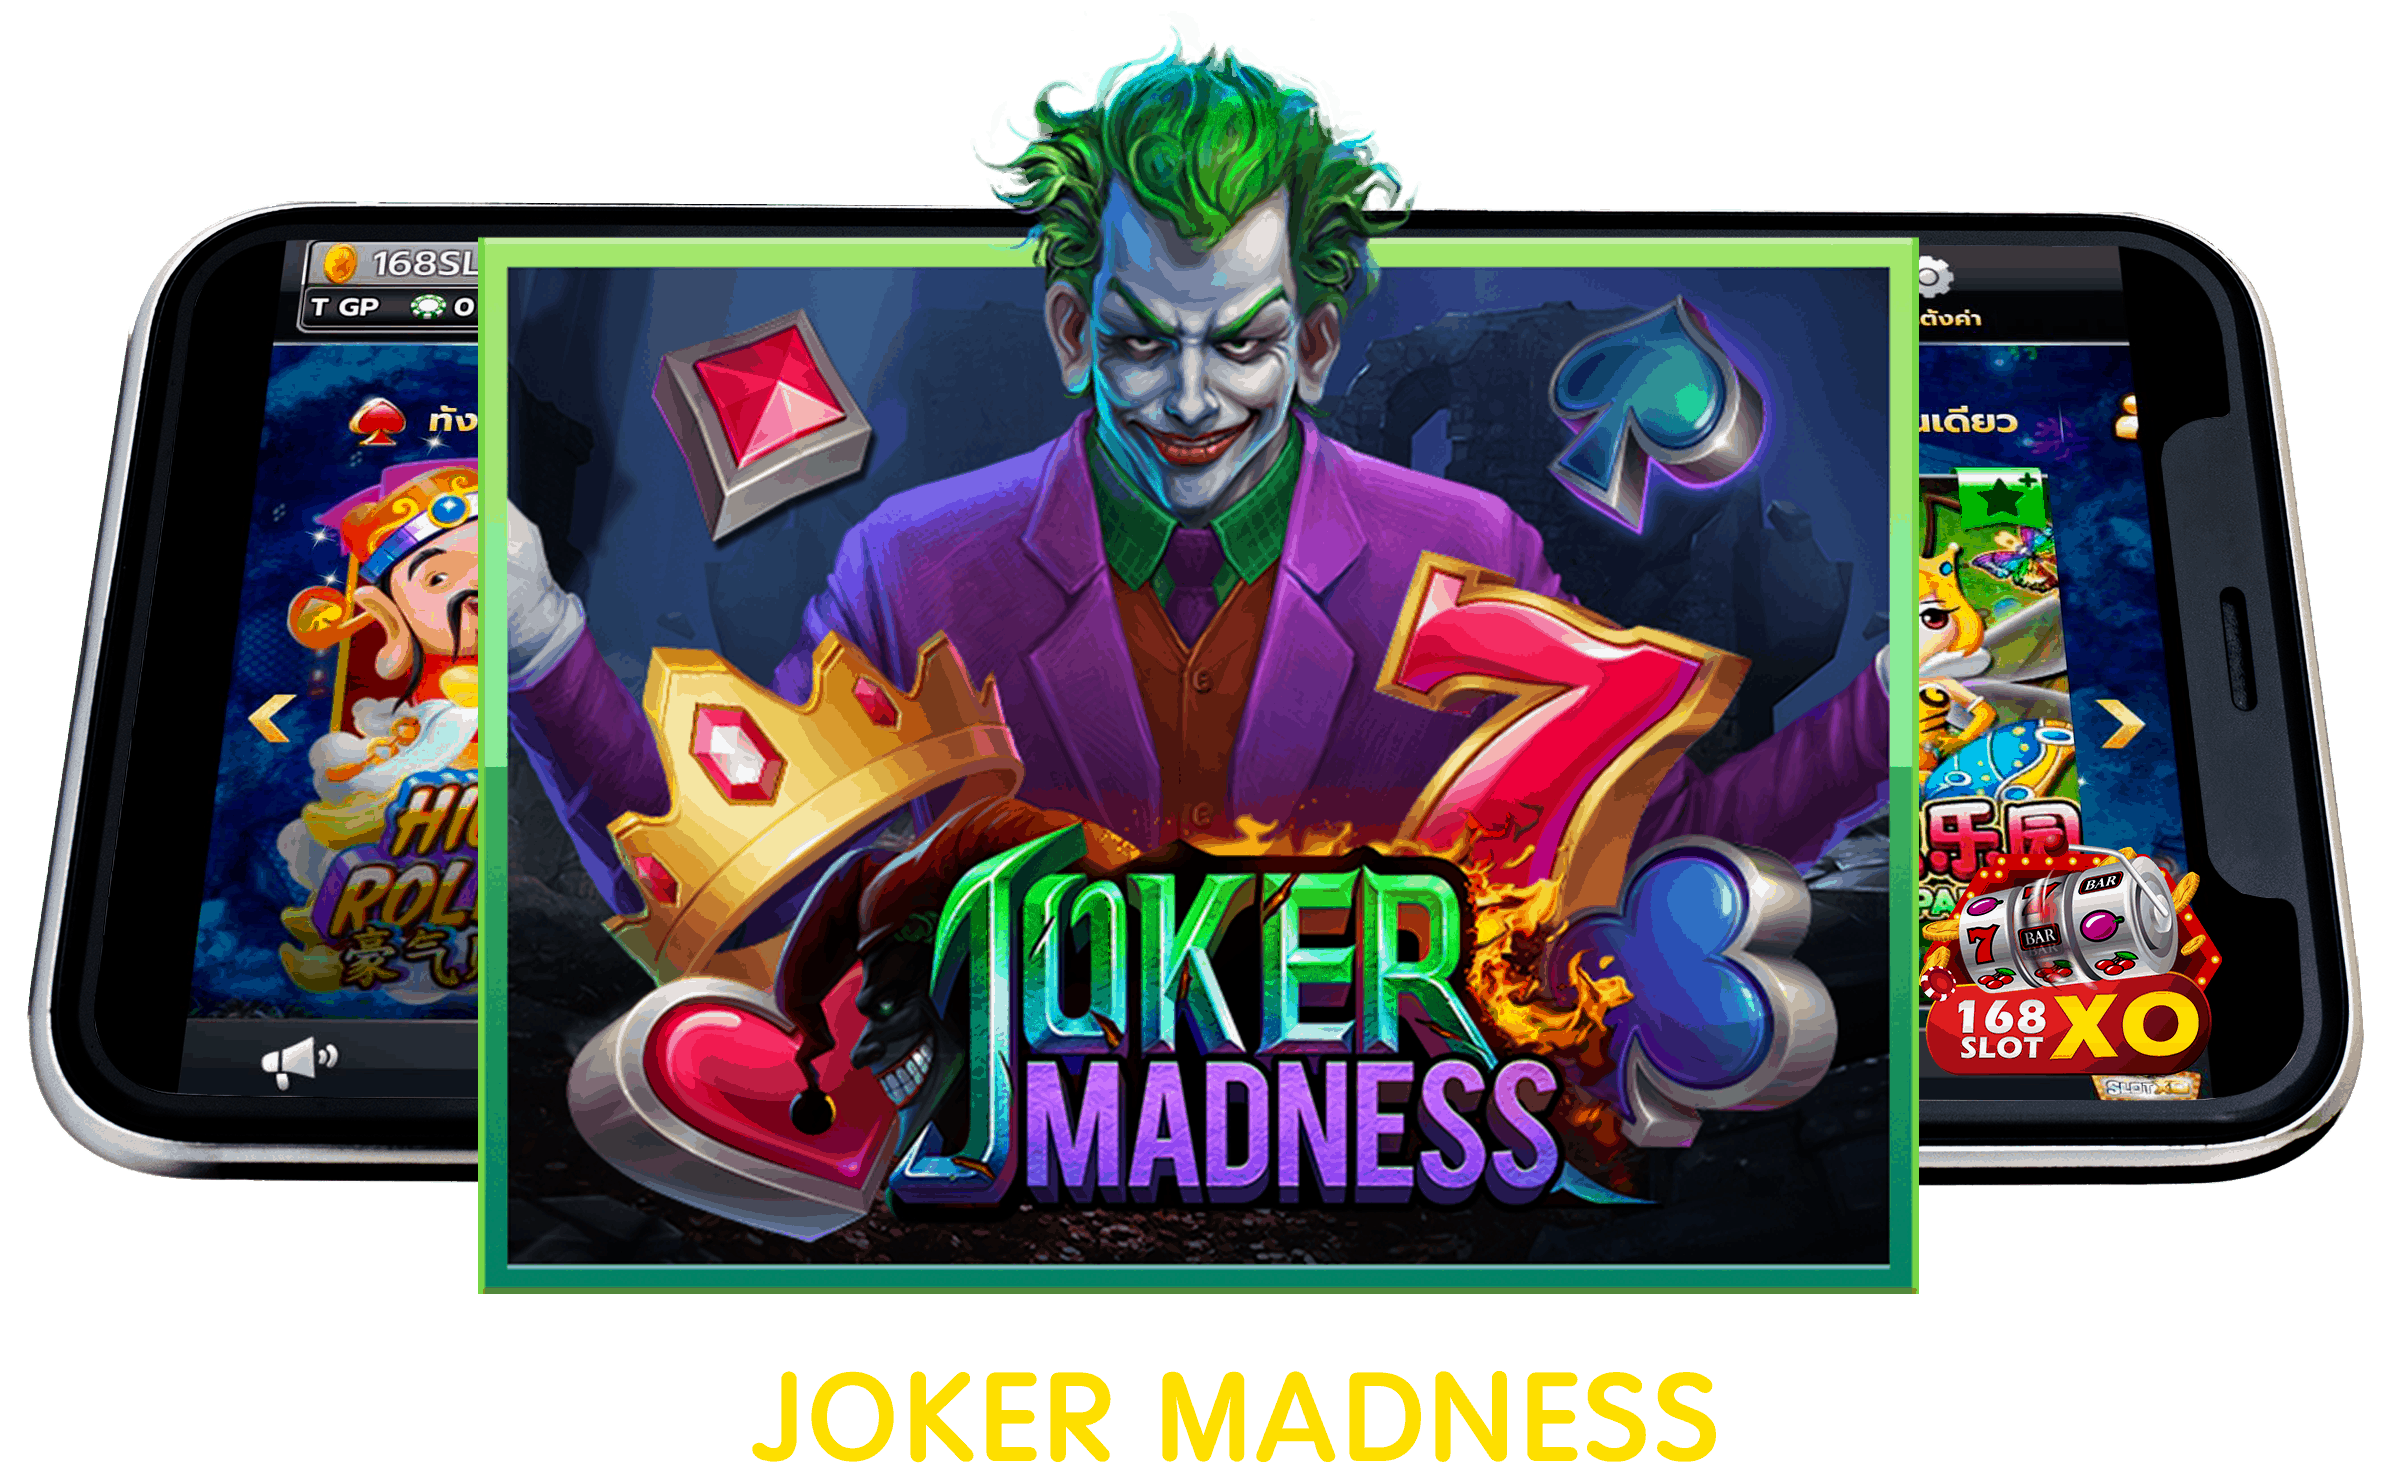 Joker Madness à¹à¸à¸°à¸à¸³à¹à¸à¸¡à¸ªà¸¥ à¸­à¸à¸­à¸­à¸à¹à¸¥à¸ à¸ à¸²à¹à¸¥ à¸ à¸à¸£à¸°à¸à¸³à¸ 2563